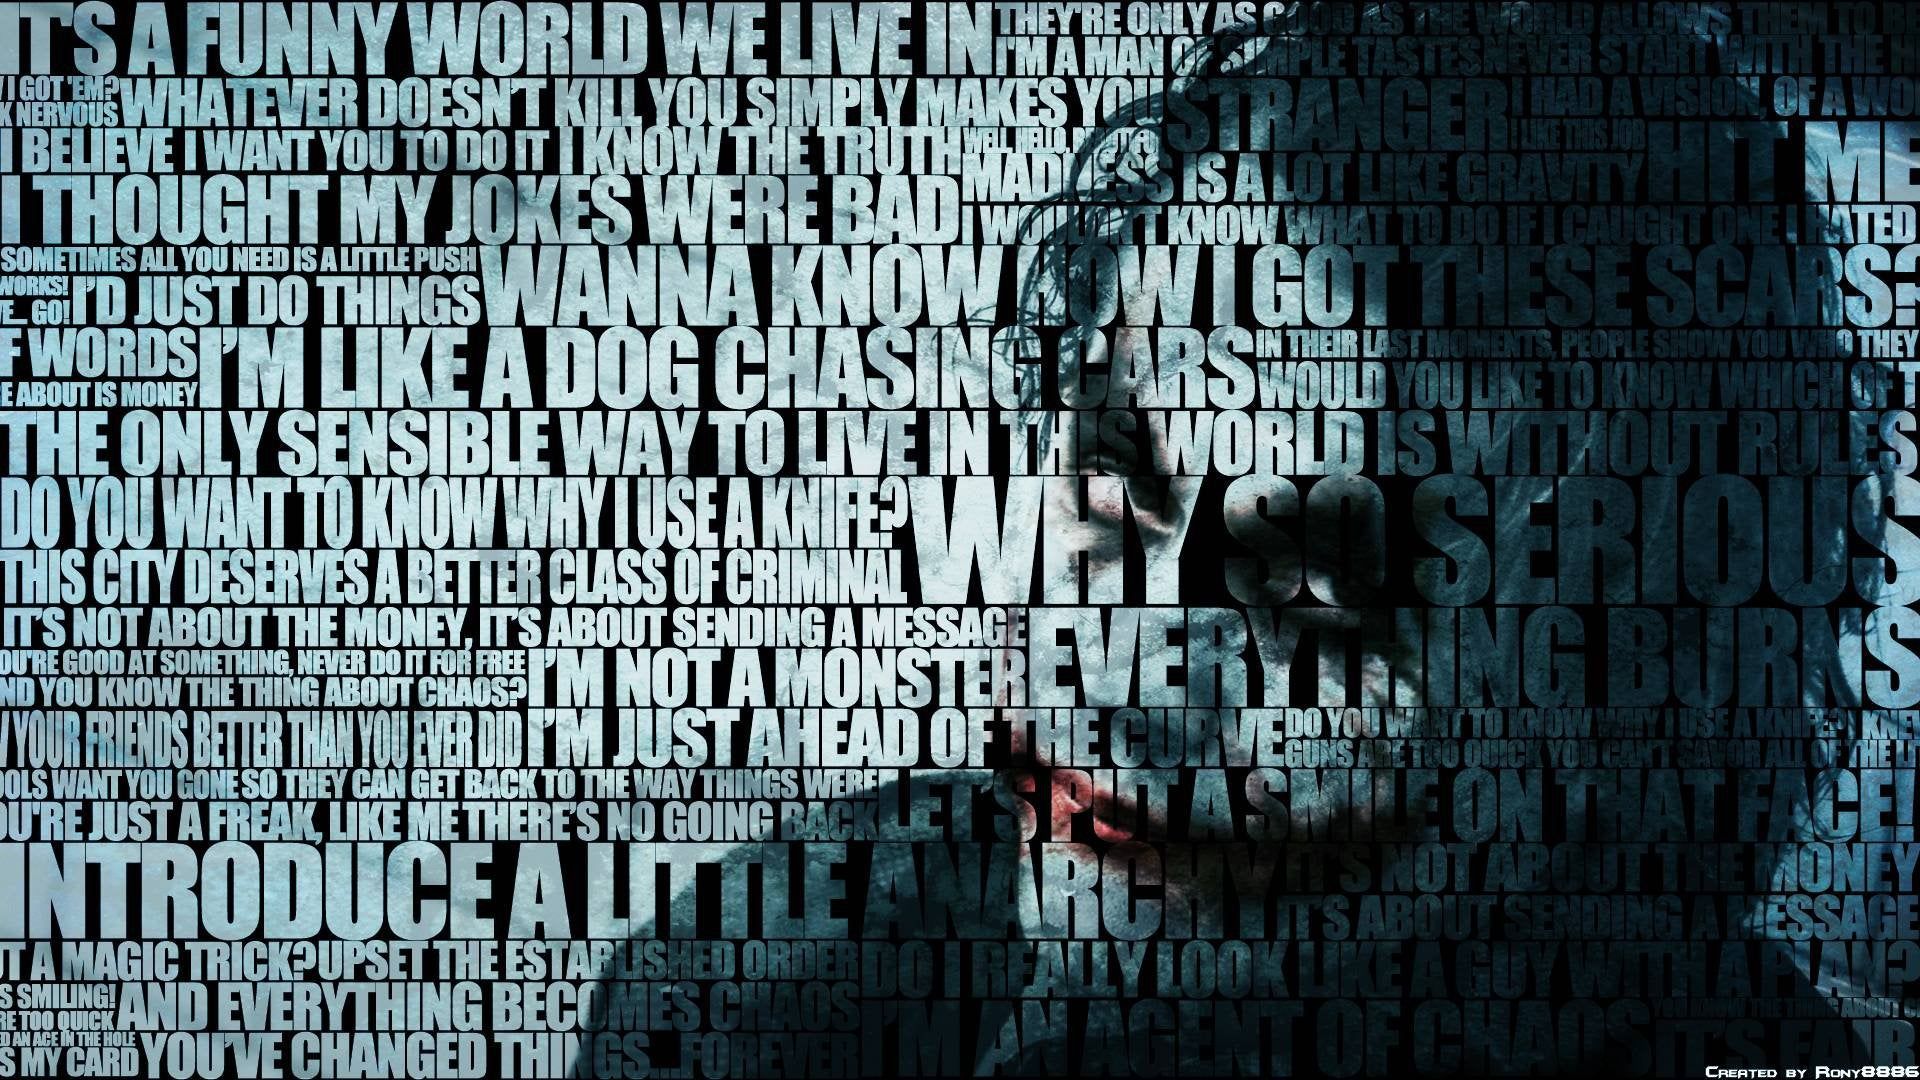 The Joker [1920x1080], wallpaperreddit.com